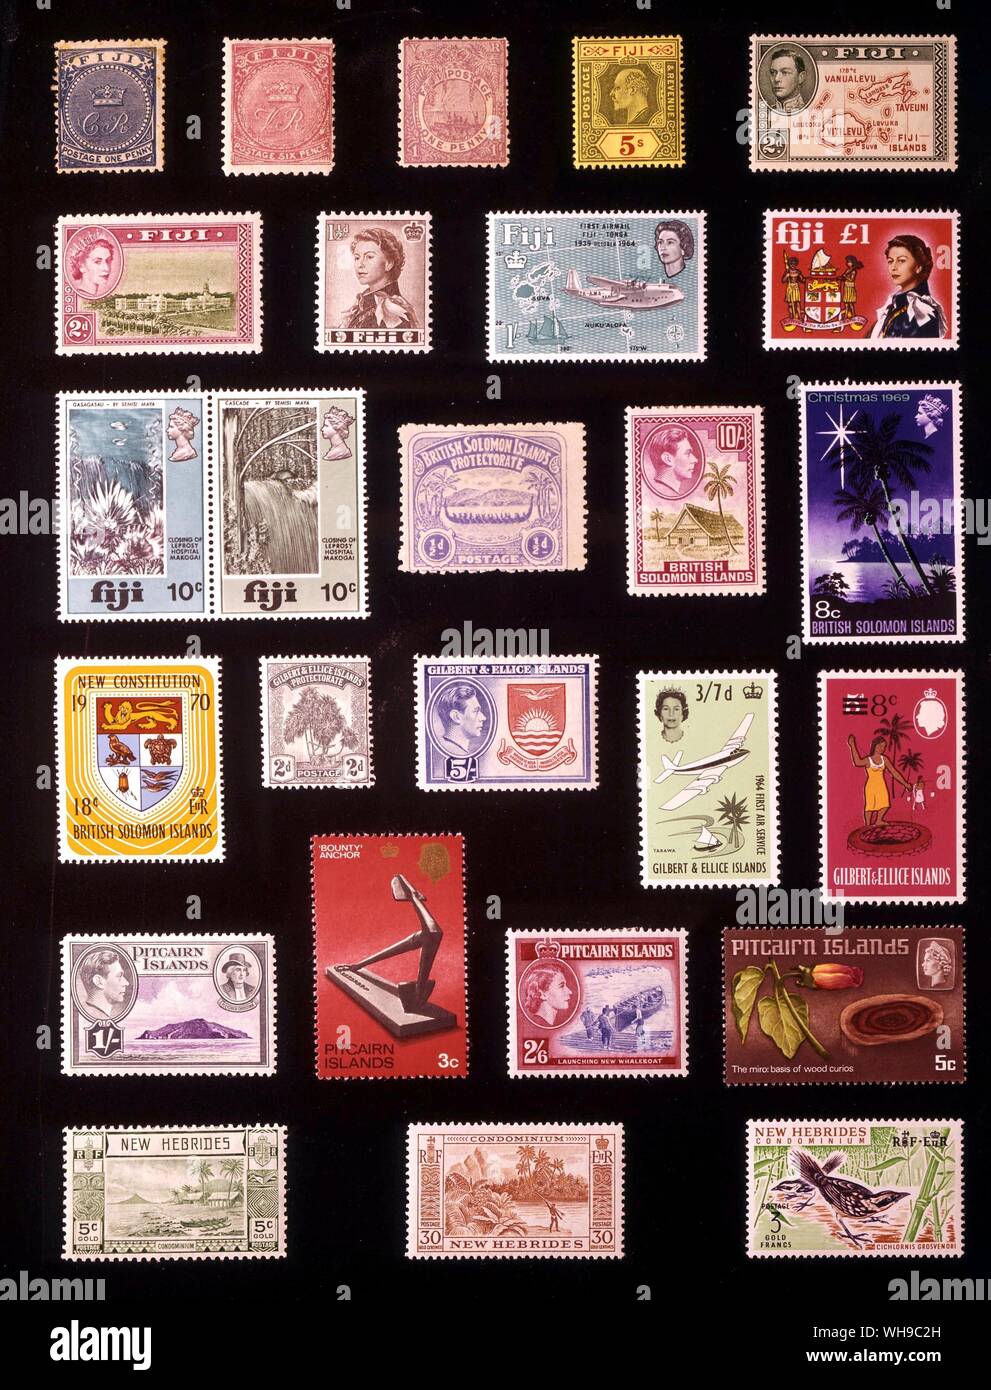 Australien und Polynesien - westlichen Pazifik Hohen Kommission: (von links nach rechts) 1. Fidschi, 1 Penny 1871, 2. Fidschi, 6 Pence, 1878, 3. Fidschi, 1 Penny 1895, 4. Fidschi, 5 Schilling 1911, 5. Fidschi, 2 Pence, 1938, 6. Fidschi, 2 Pence, 1954, 7. Fidschi, 1,5 Pence, 1962, 8. Fidschi, 1 Schilling, 1964, 9. Fidschi, 1 Pfund, 1968, 10. Fidschi, 10 + 10 Cent 1970, 11. Britische Salomonen Protektorat, 0,5 Cent 1907, 12. Britische Salomonen, 10 Schilling, 1942, 13. Britische Salomonen, 8 Cent 1969, 14. Britische Salomonen, 18 Cent, 1970, 15. Gilbert und Ellice Inseln, 2 Pence 1911, 16. Gilbert und Ellice Stockfoto